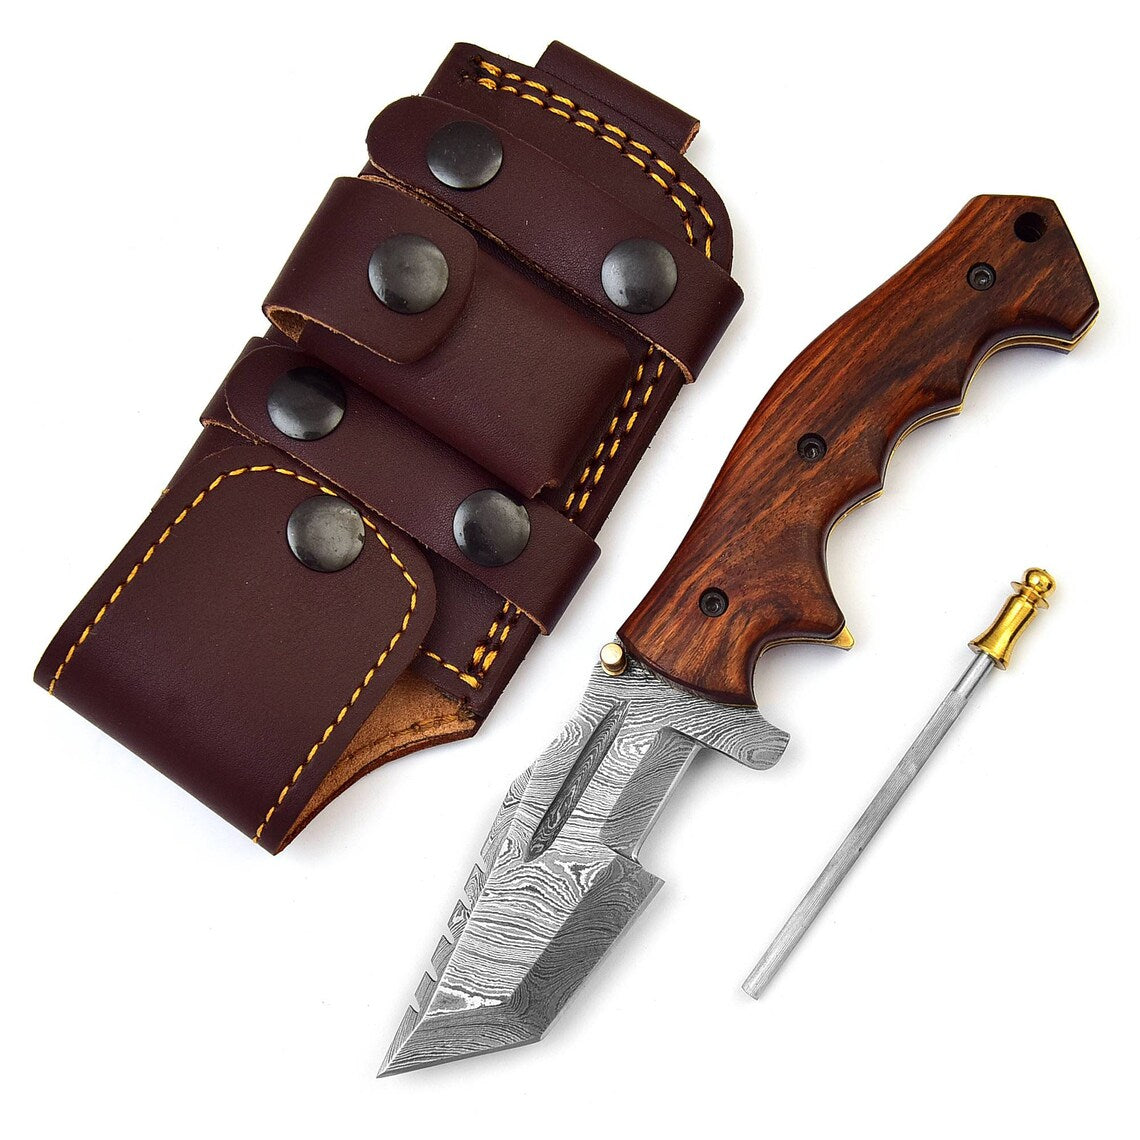 Handmade Damascus Steel Tracker Pocket Knife for Camping